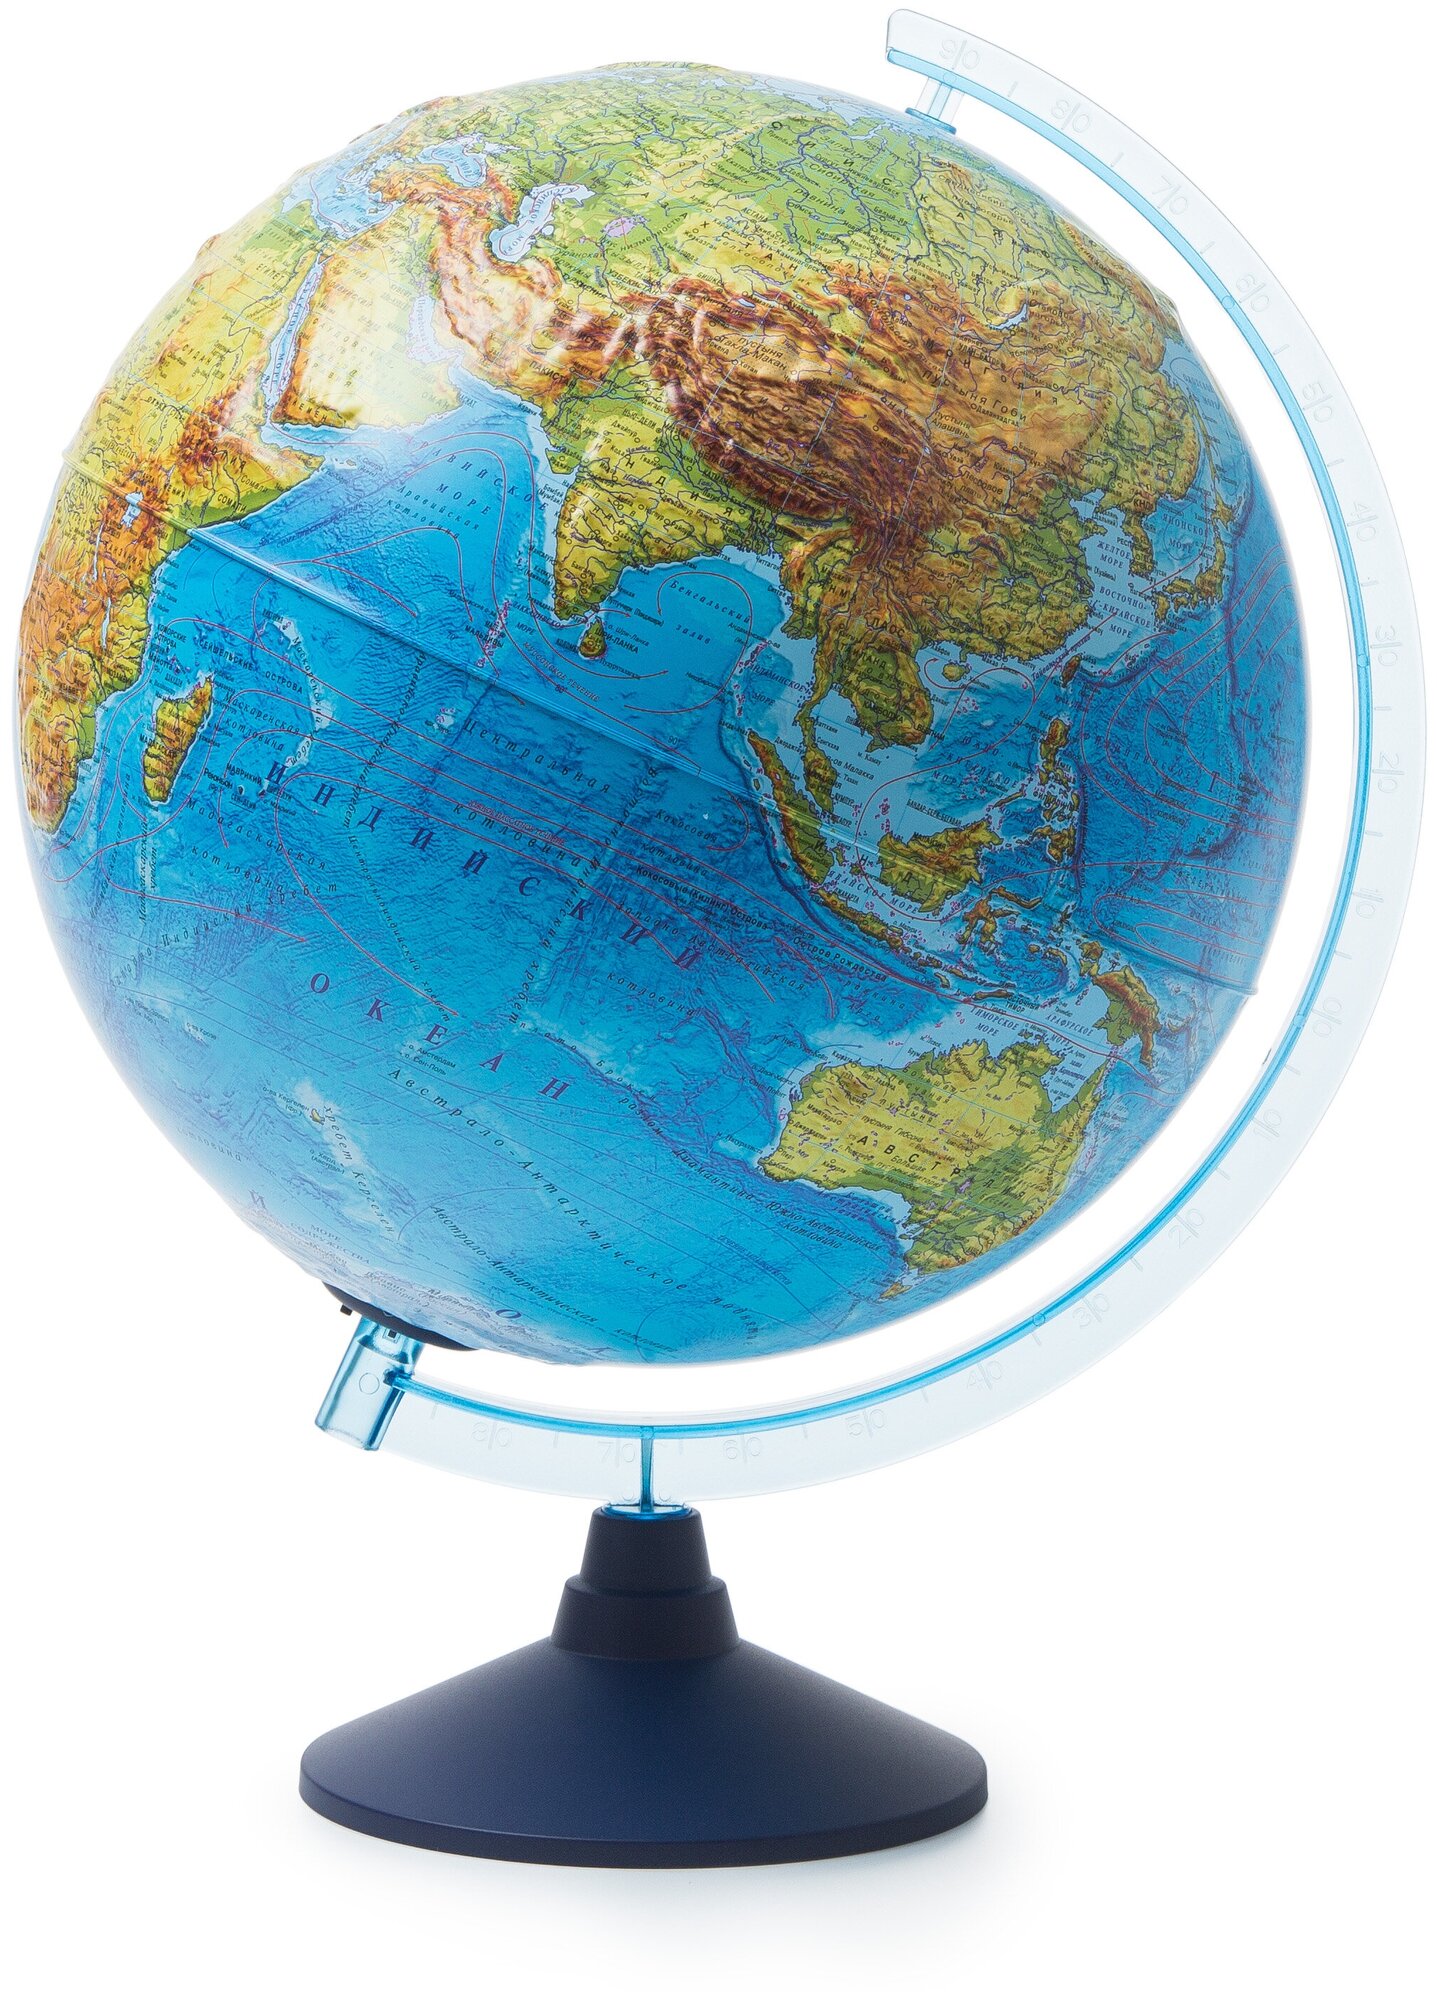 Глобен Глобус земли D-32 физико-политический рельефный с подсветкой от батареек/ Серия Классик Евро